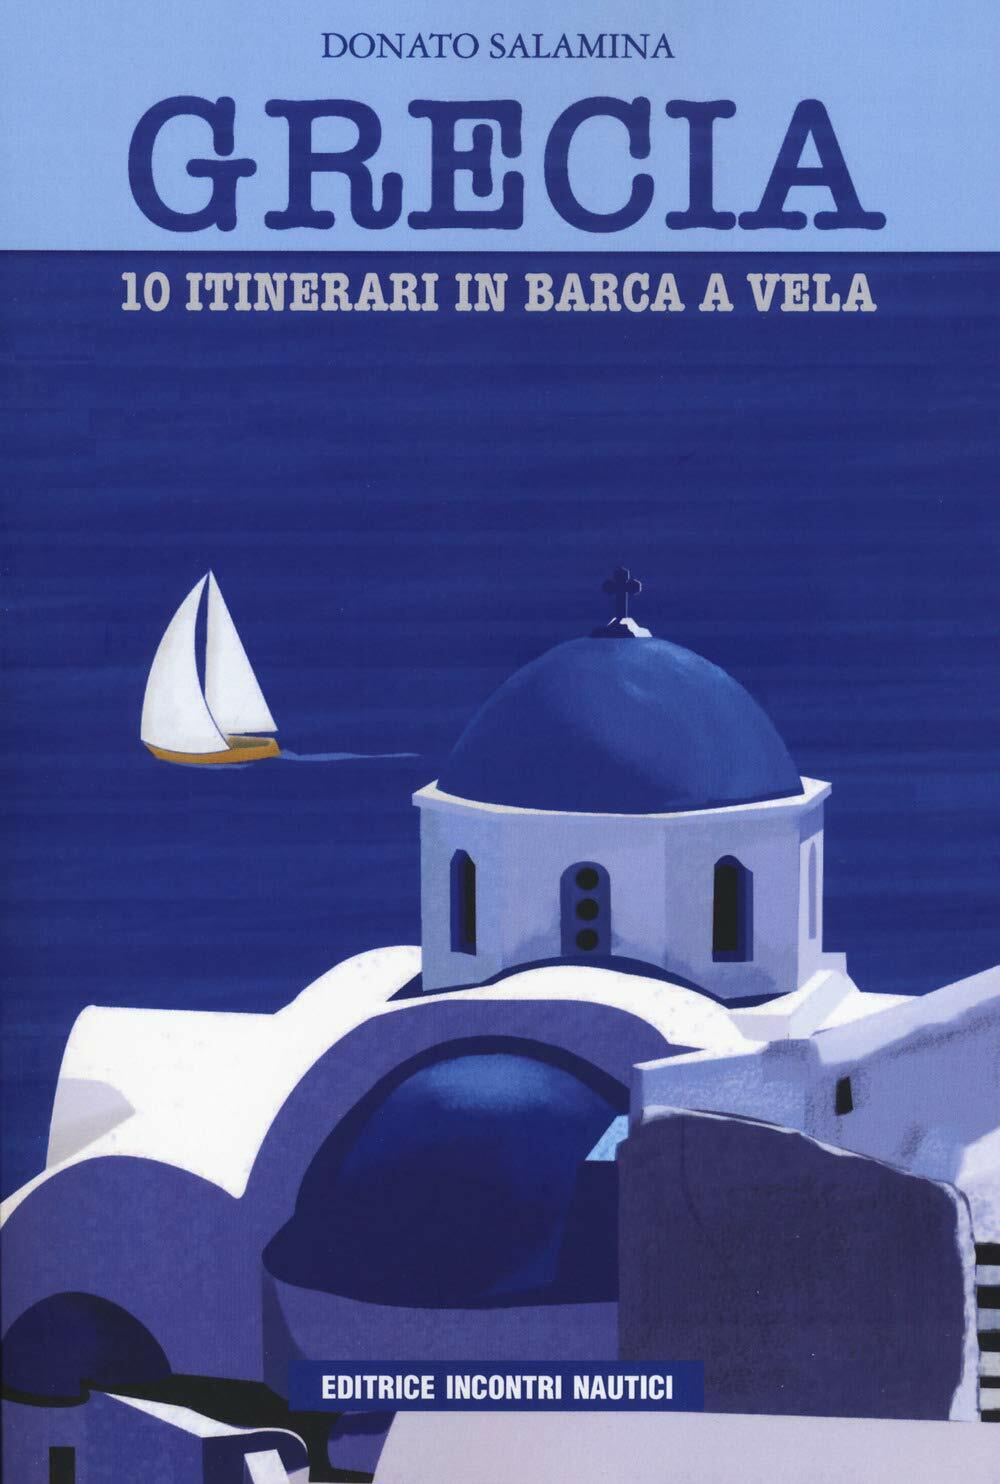 Grecia. 10 itinerari in barca a vela - Donato Salamina - Incontri nautici, 2020